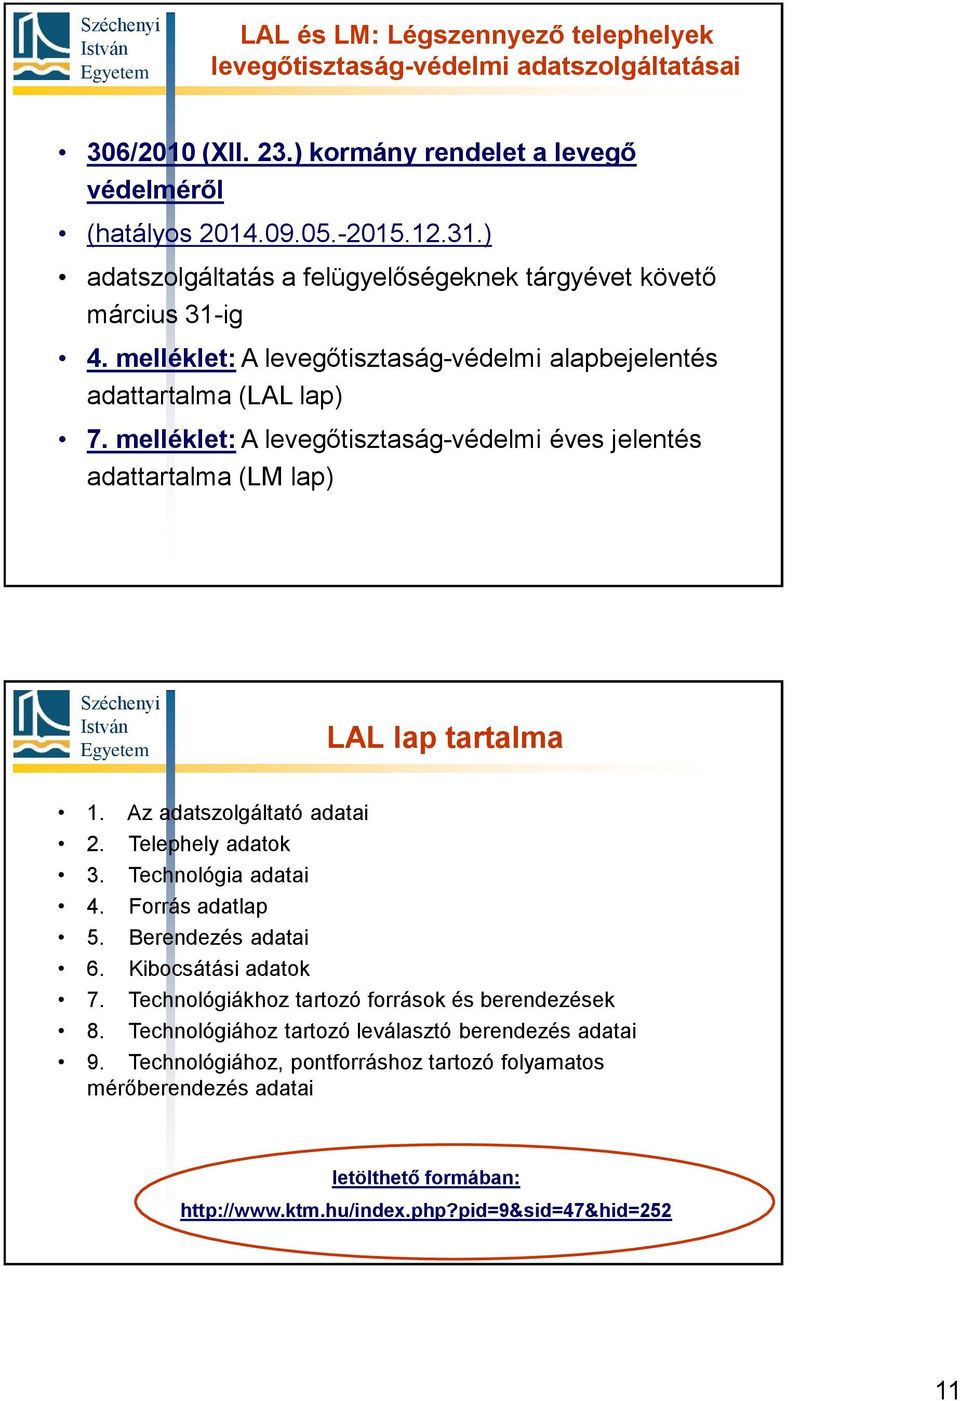 melléklet: A levegőtisztaság-védelmi éves jelentés adattartalma (LM lap) LAL lap tartalma 1. Az adatszolgáltató adatai 2. Telephely adatok 3. Technológia adatai 4. Forrás adatlap 5.